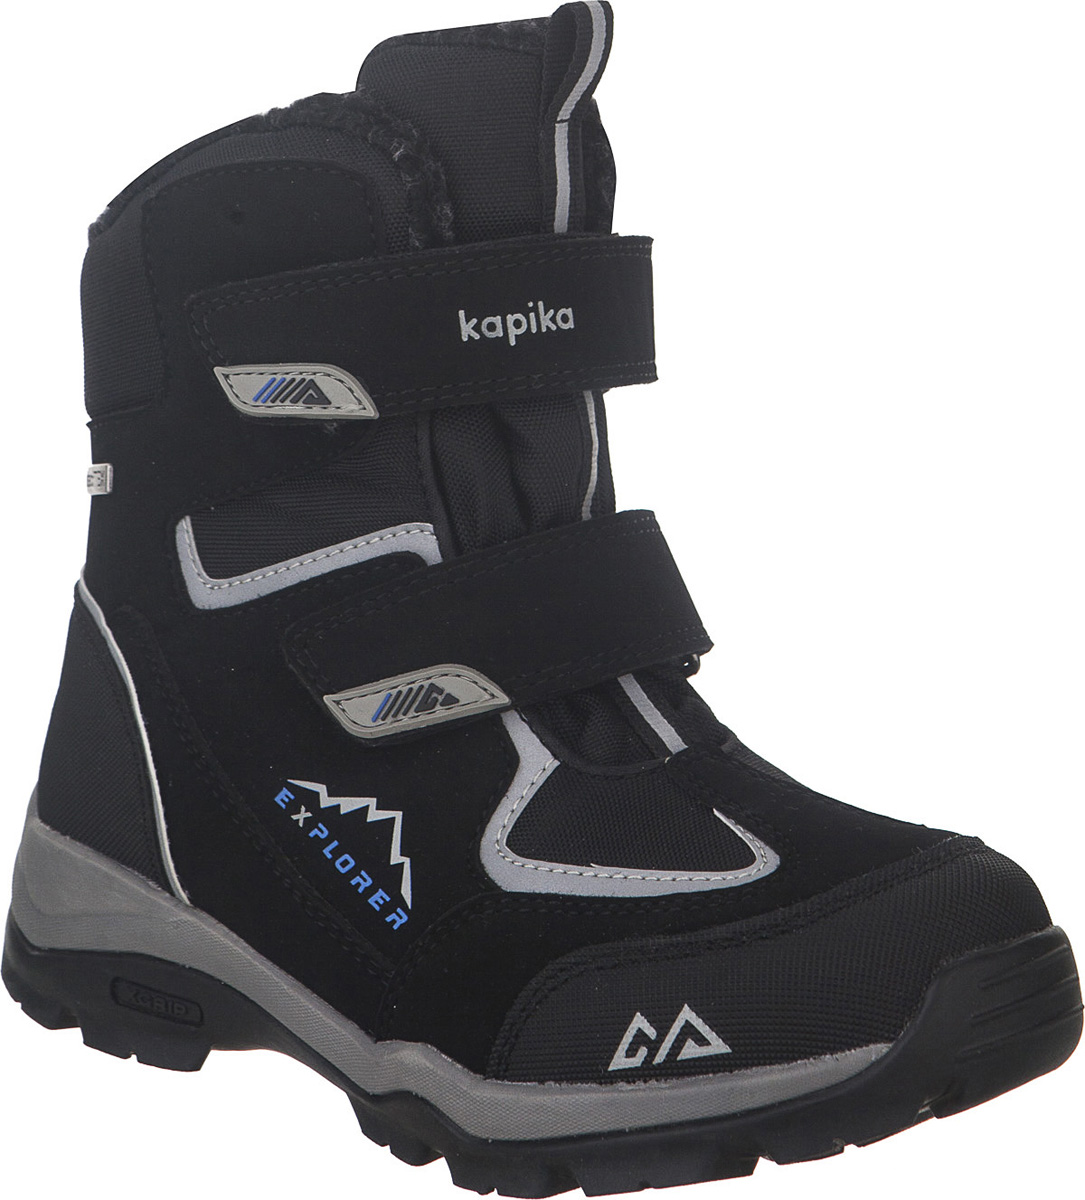 Ботинки для мальчика Kapika KapiTEX, цвет: черный. 43209-1. Размер 31